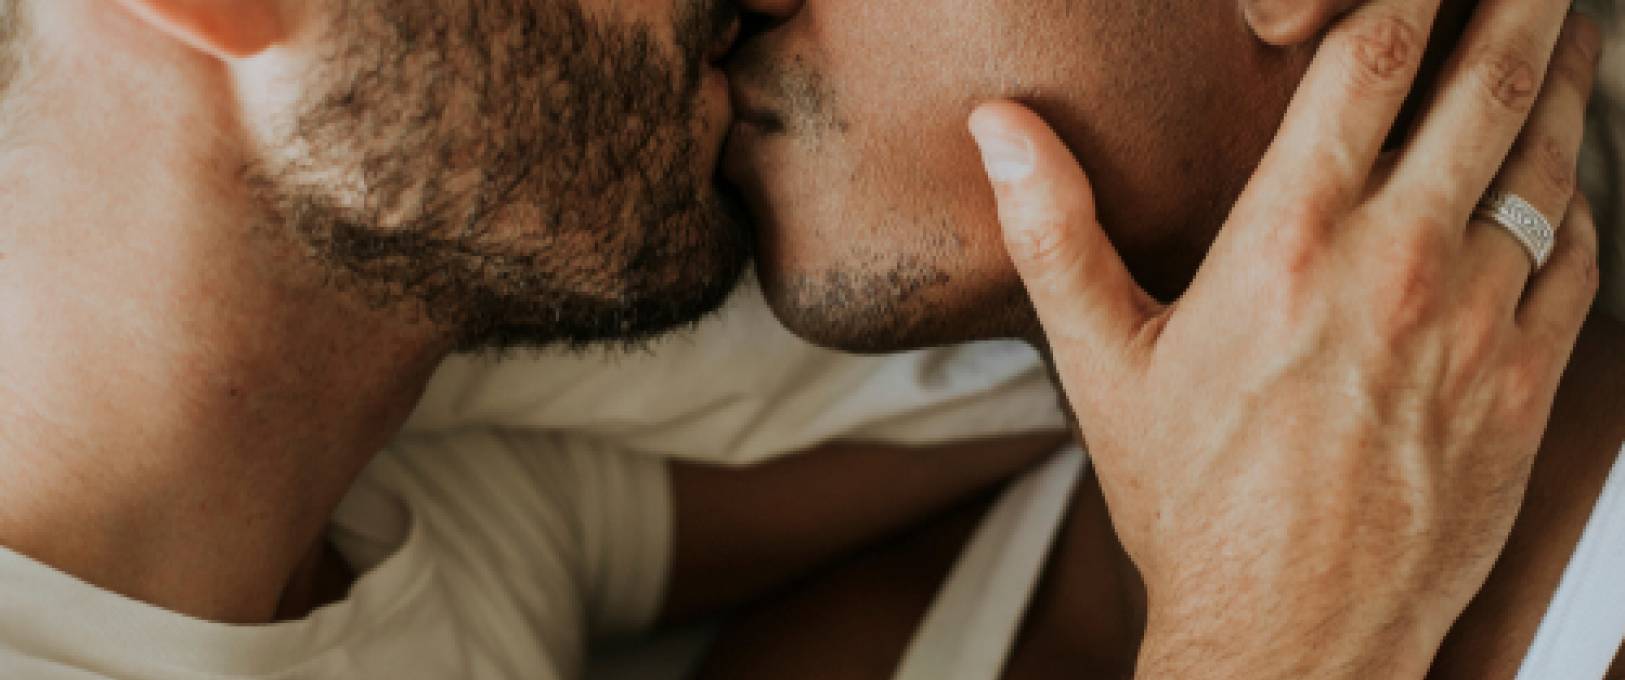 Un hétéro qui fait sa première expérience gay : « J'ai regardé son sexe avec effronterie »